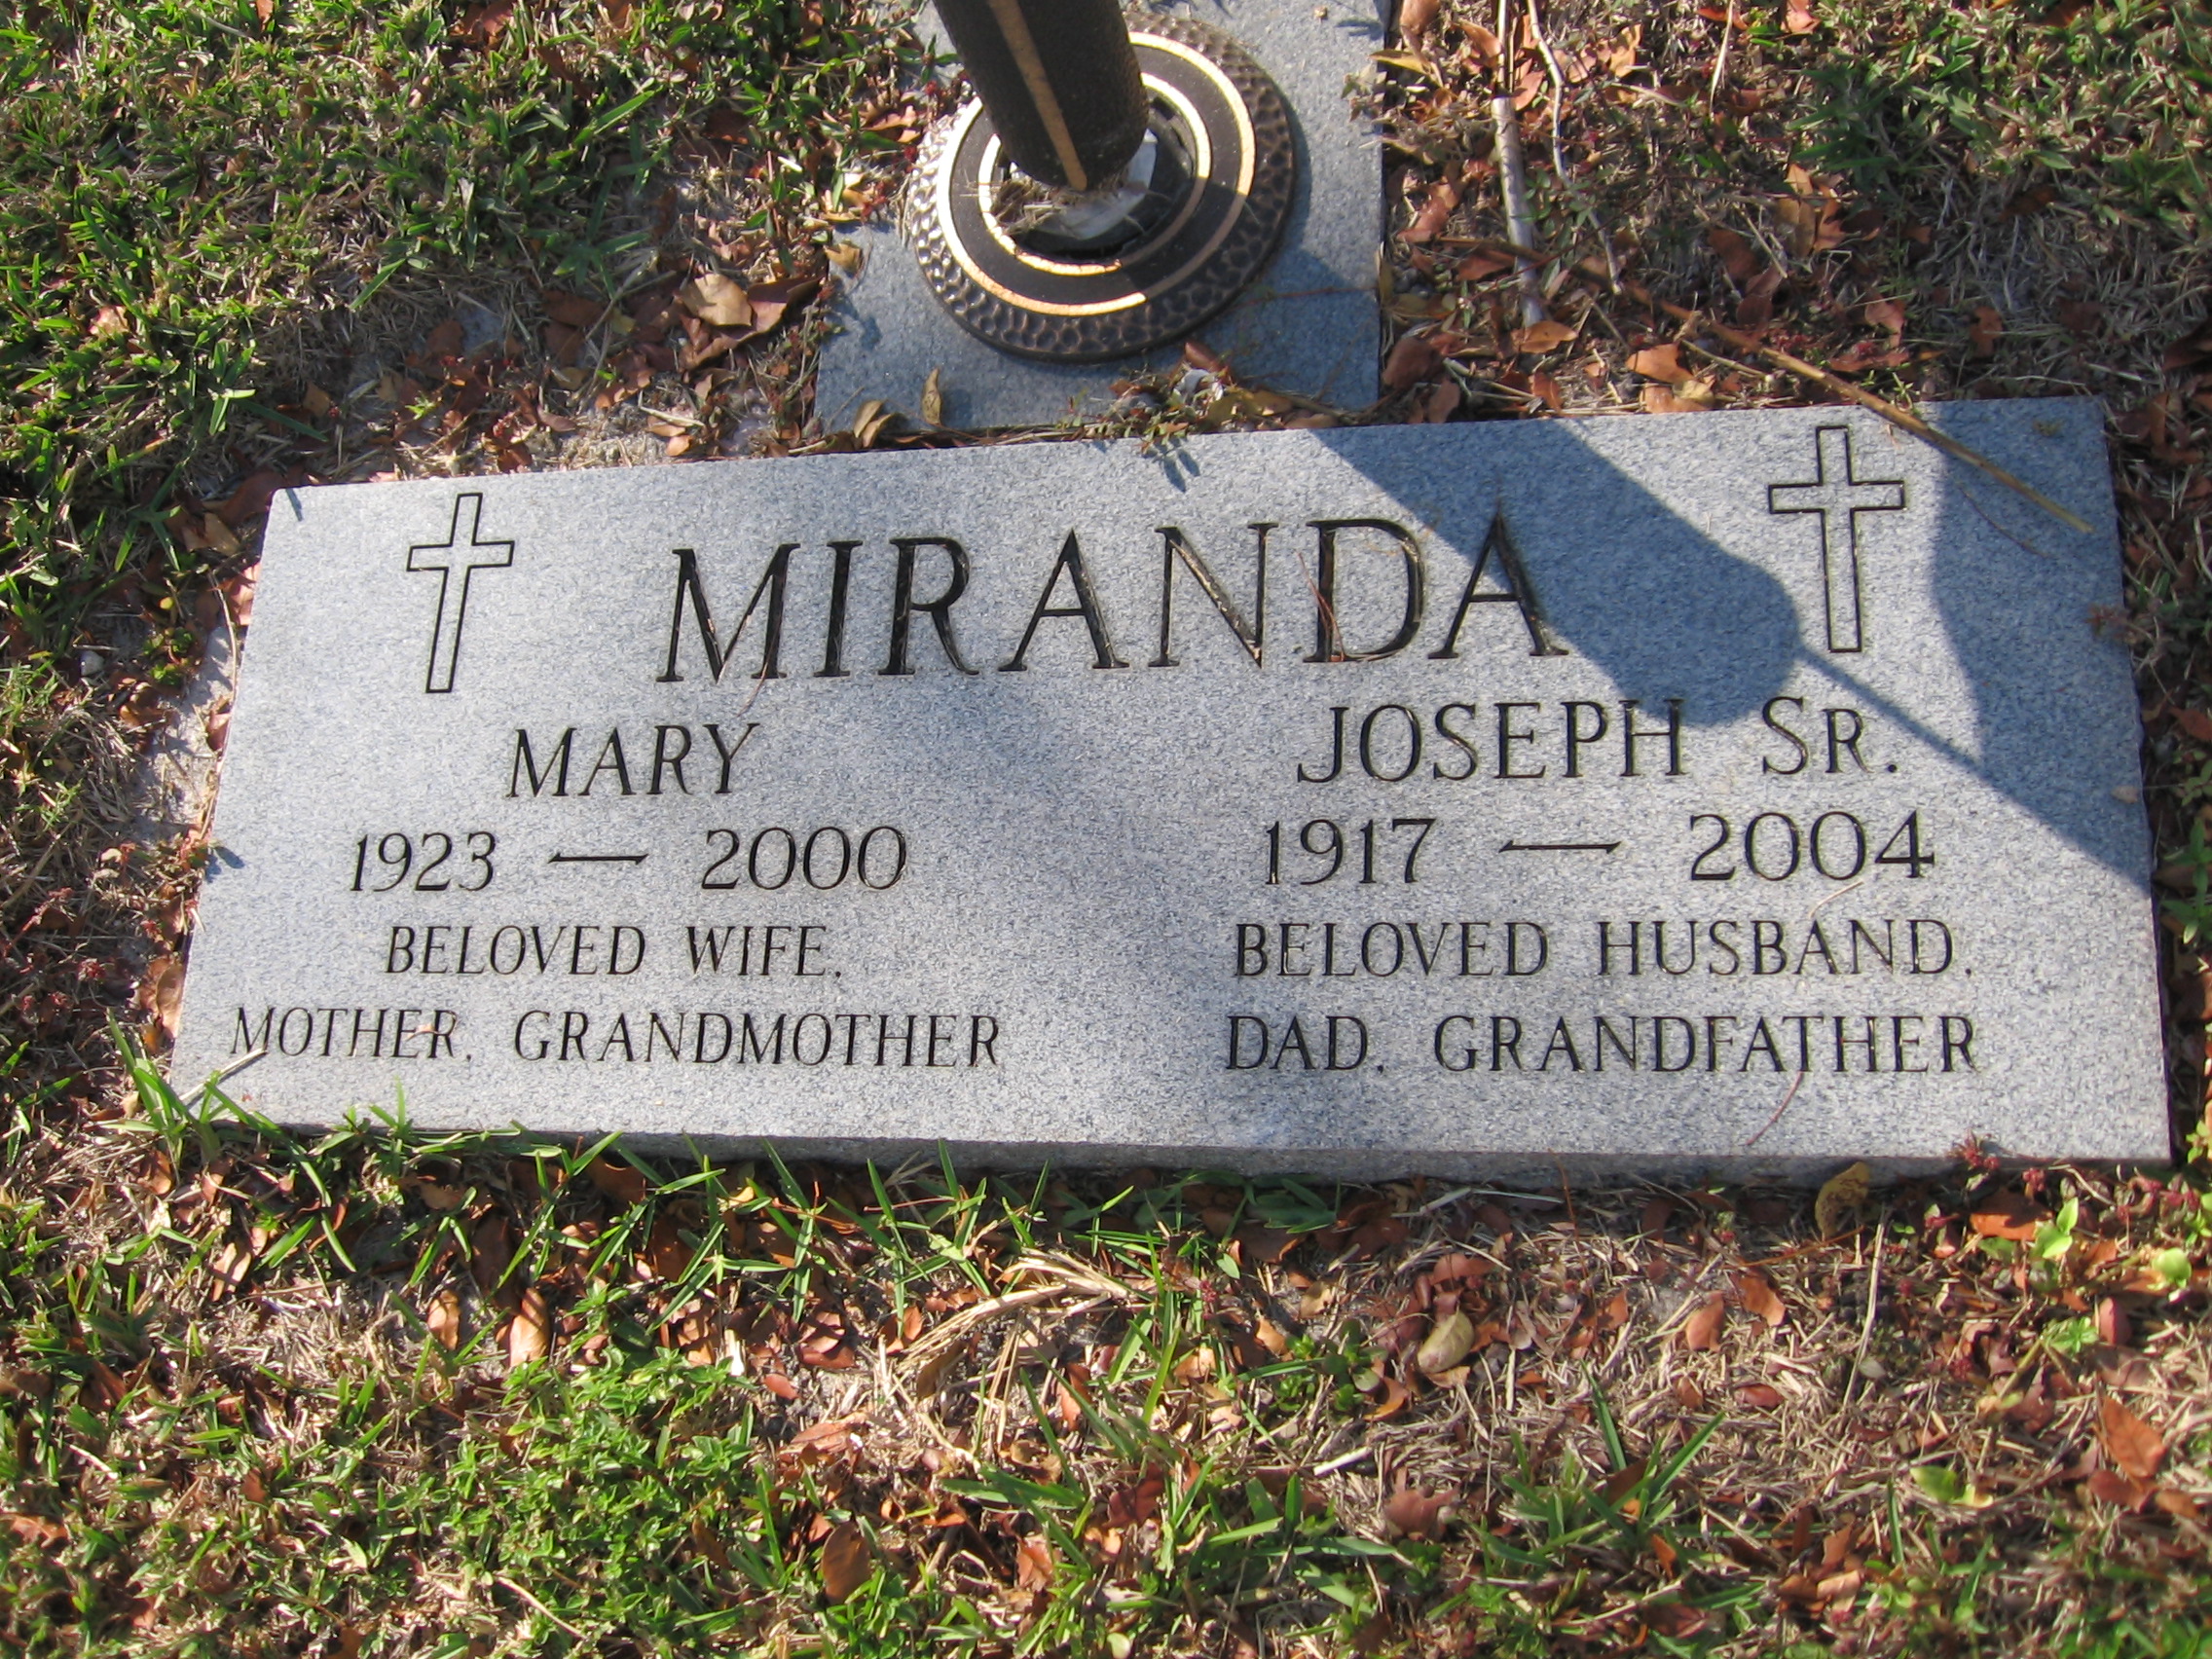 Mary Miranda